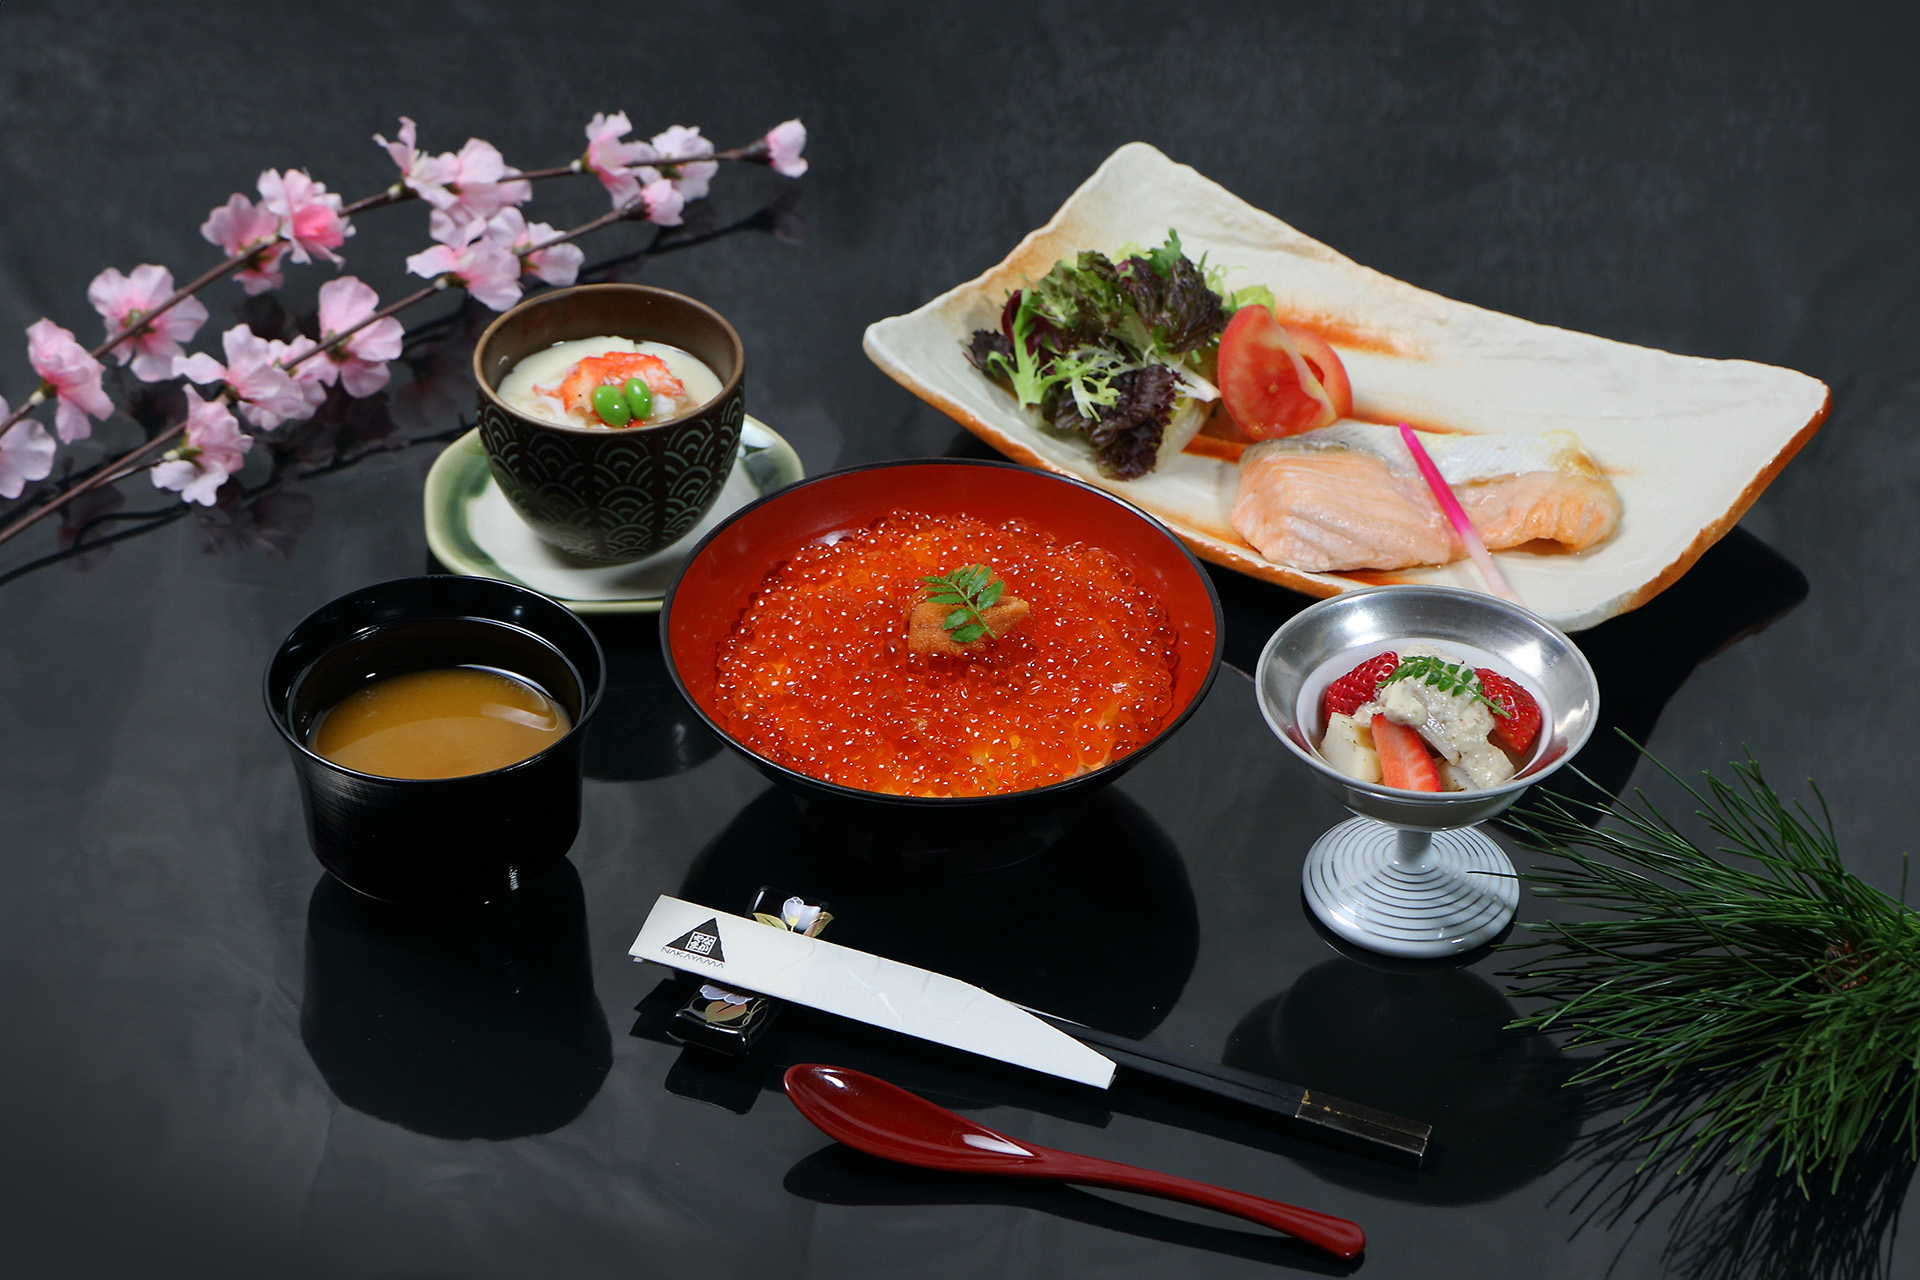 午間限定的「北海道名物御膳」套餐，其中的主角「鮭魚卵丼飯」更是嚴選來自北海道的鮭魚卵